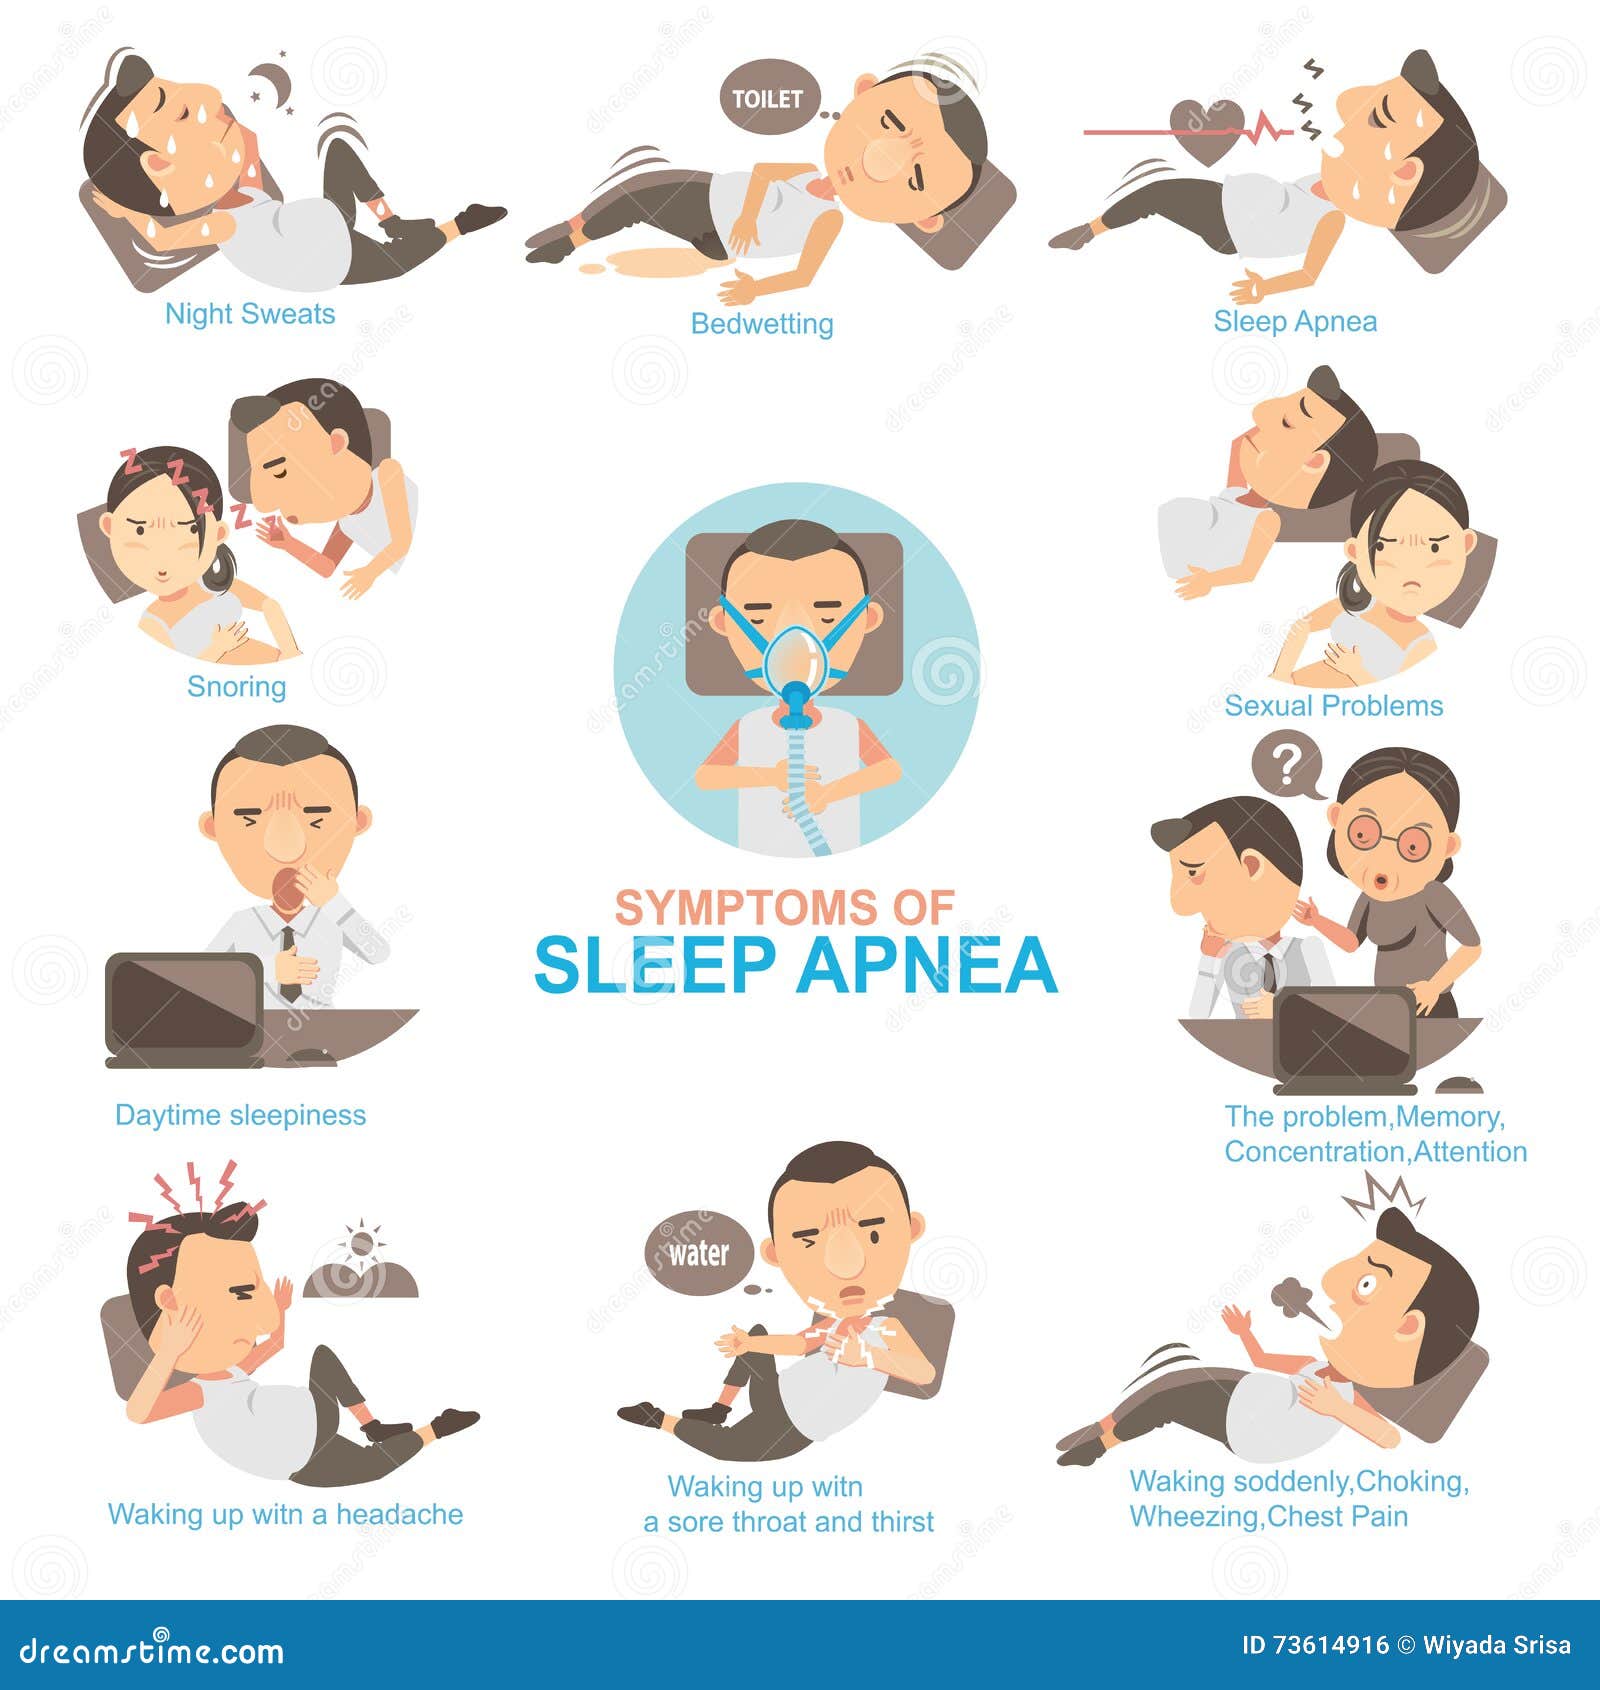 При засыпании останавливается дыхание. Синдром обструктивного апноэ сна. Апноэ во сне симптомы. Остановка дыхания во сне. Апноэ симптомы.